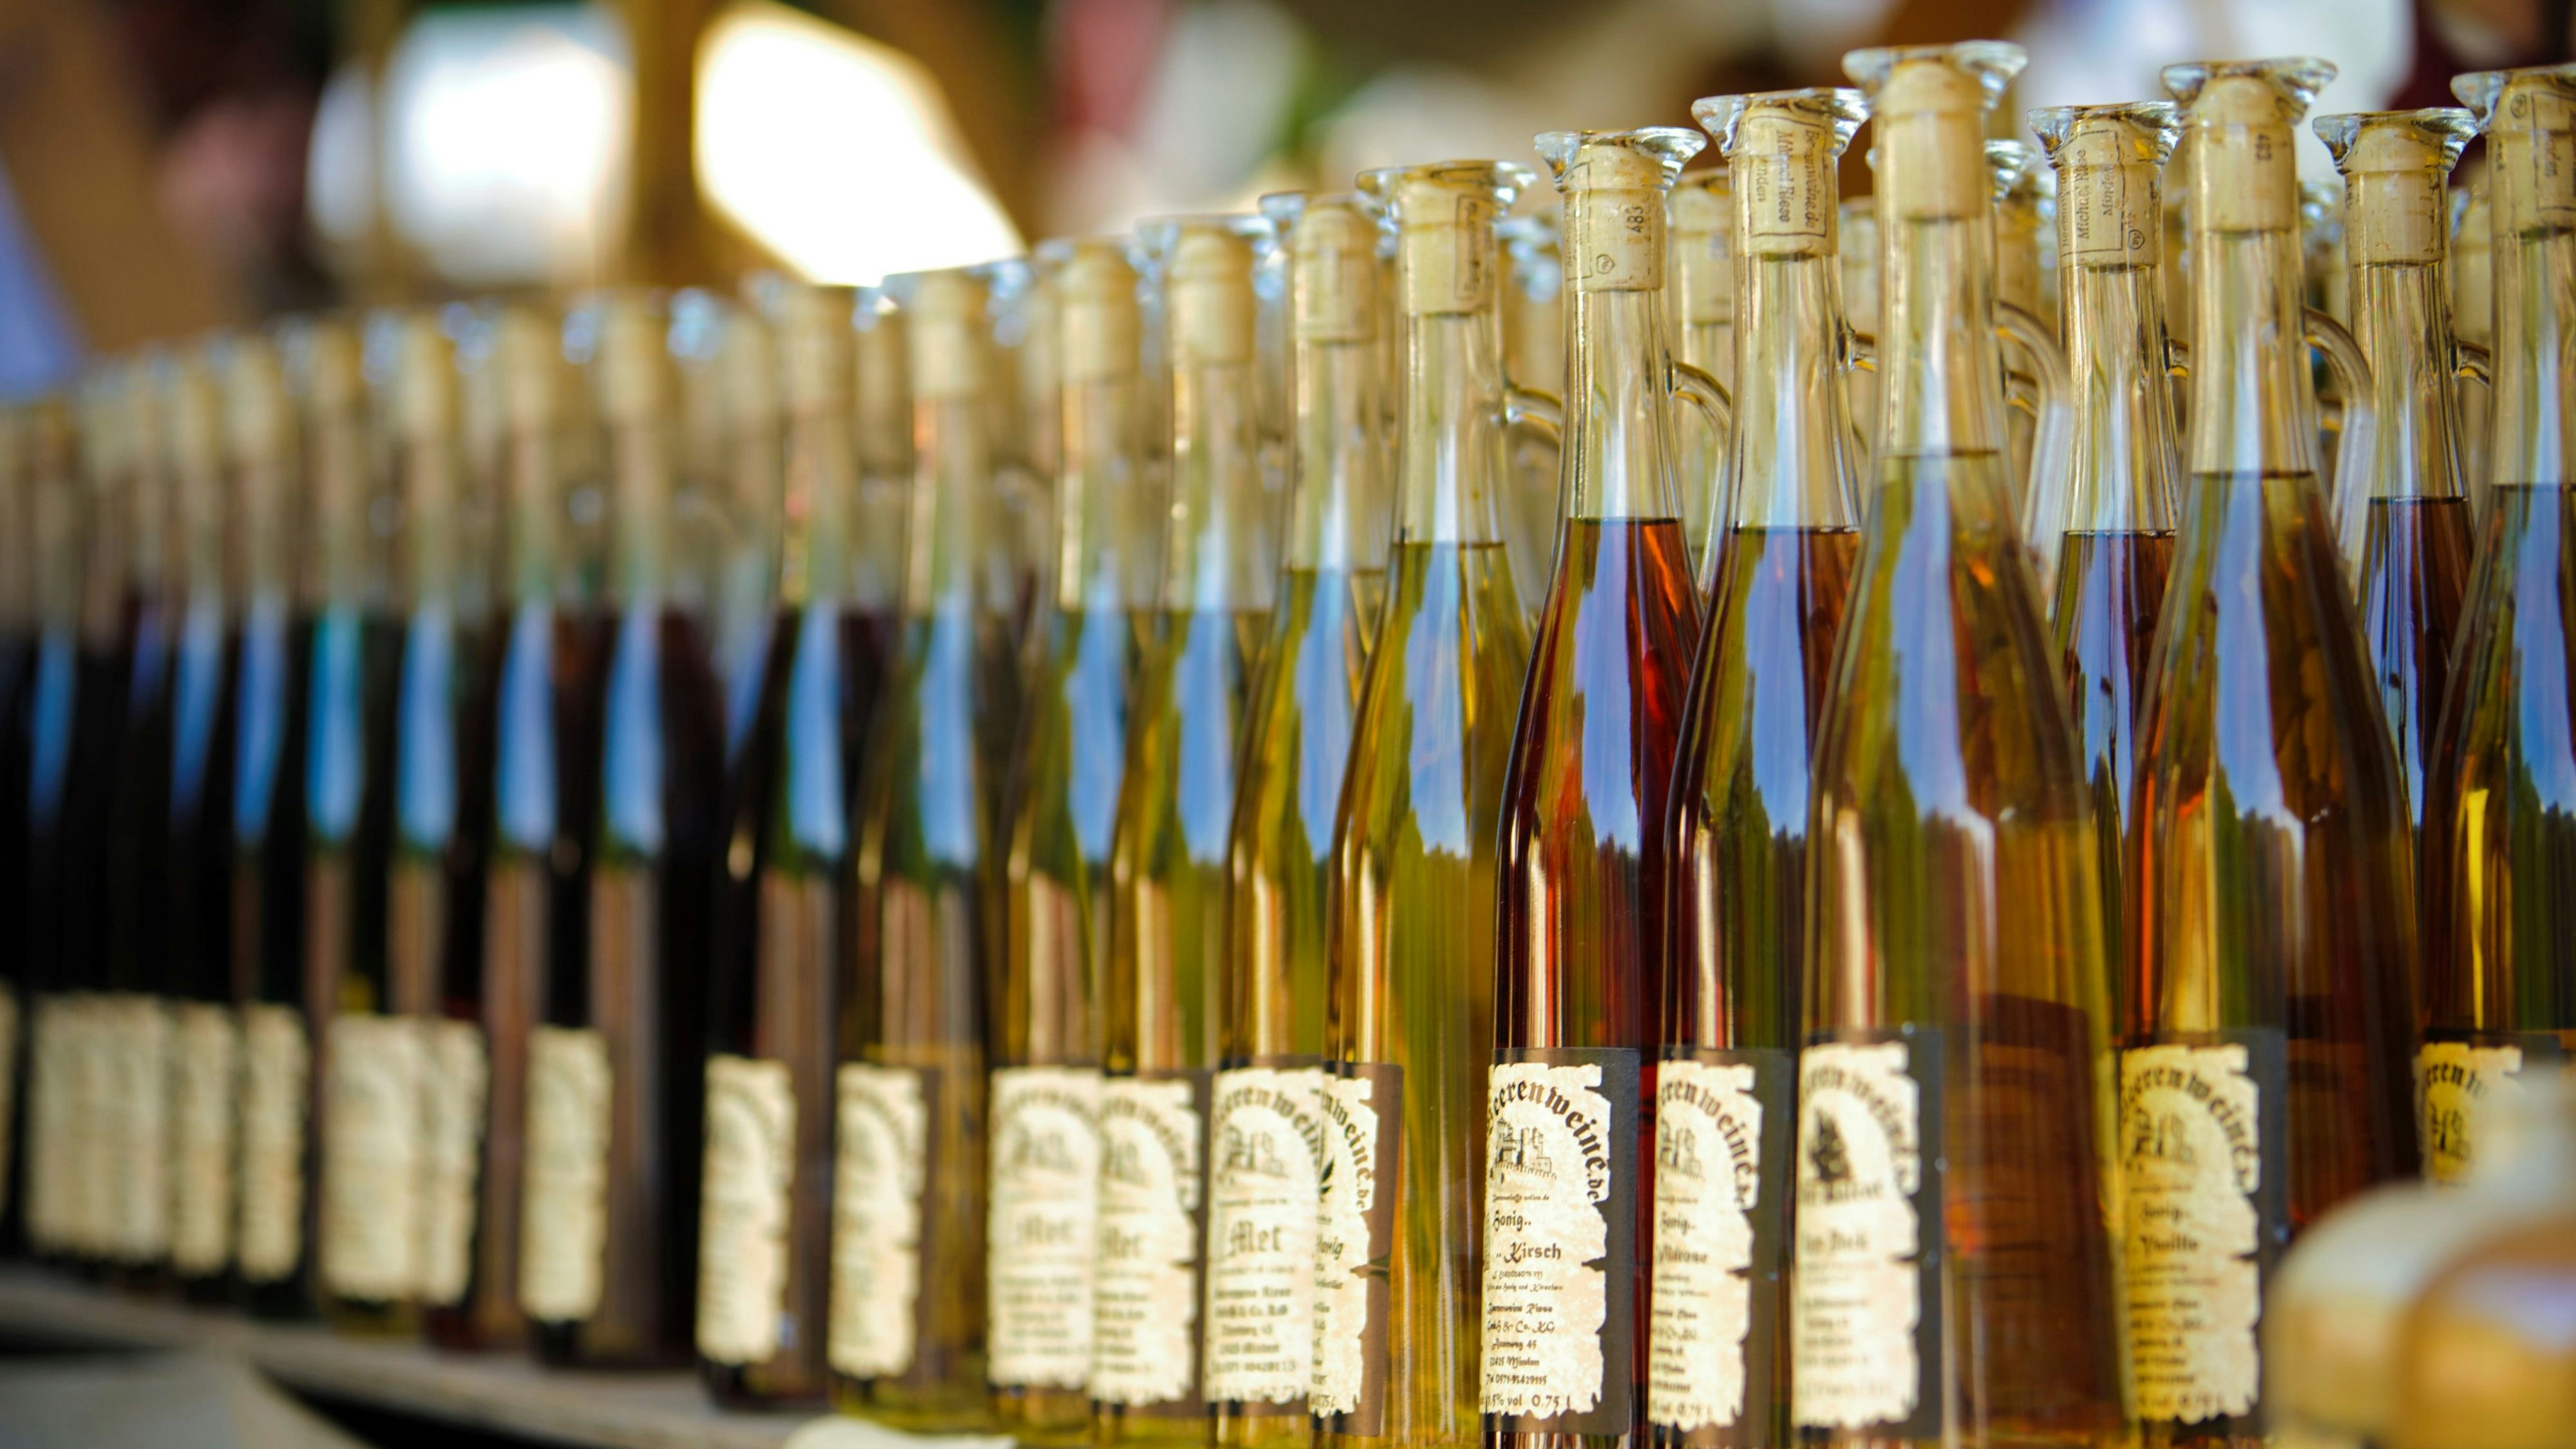 Die Stände in den Gewerbezelten des Stoppelmarktes werden in diesem Jahr fehlen: Wein- und Spirituosenhändler oder Anbieter anderer Waren dürften sehr vermisst werden. Foto: pixelio / Brinkheger